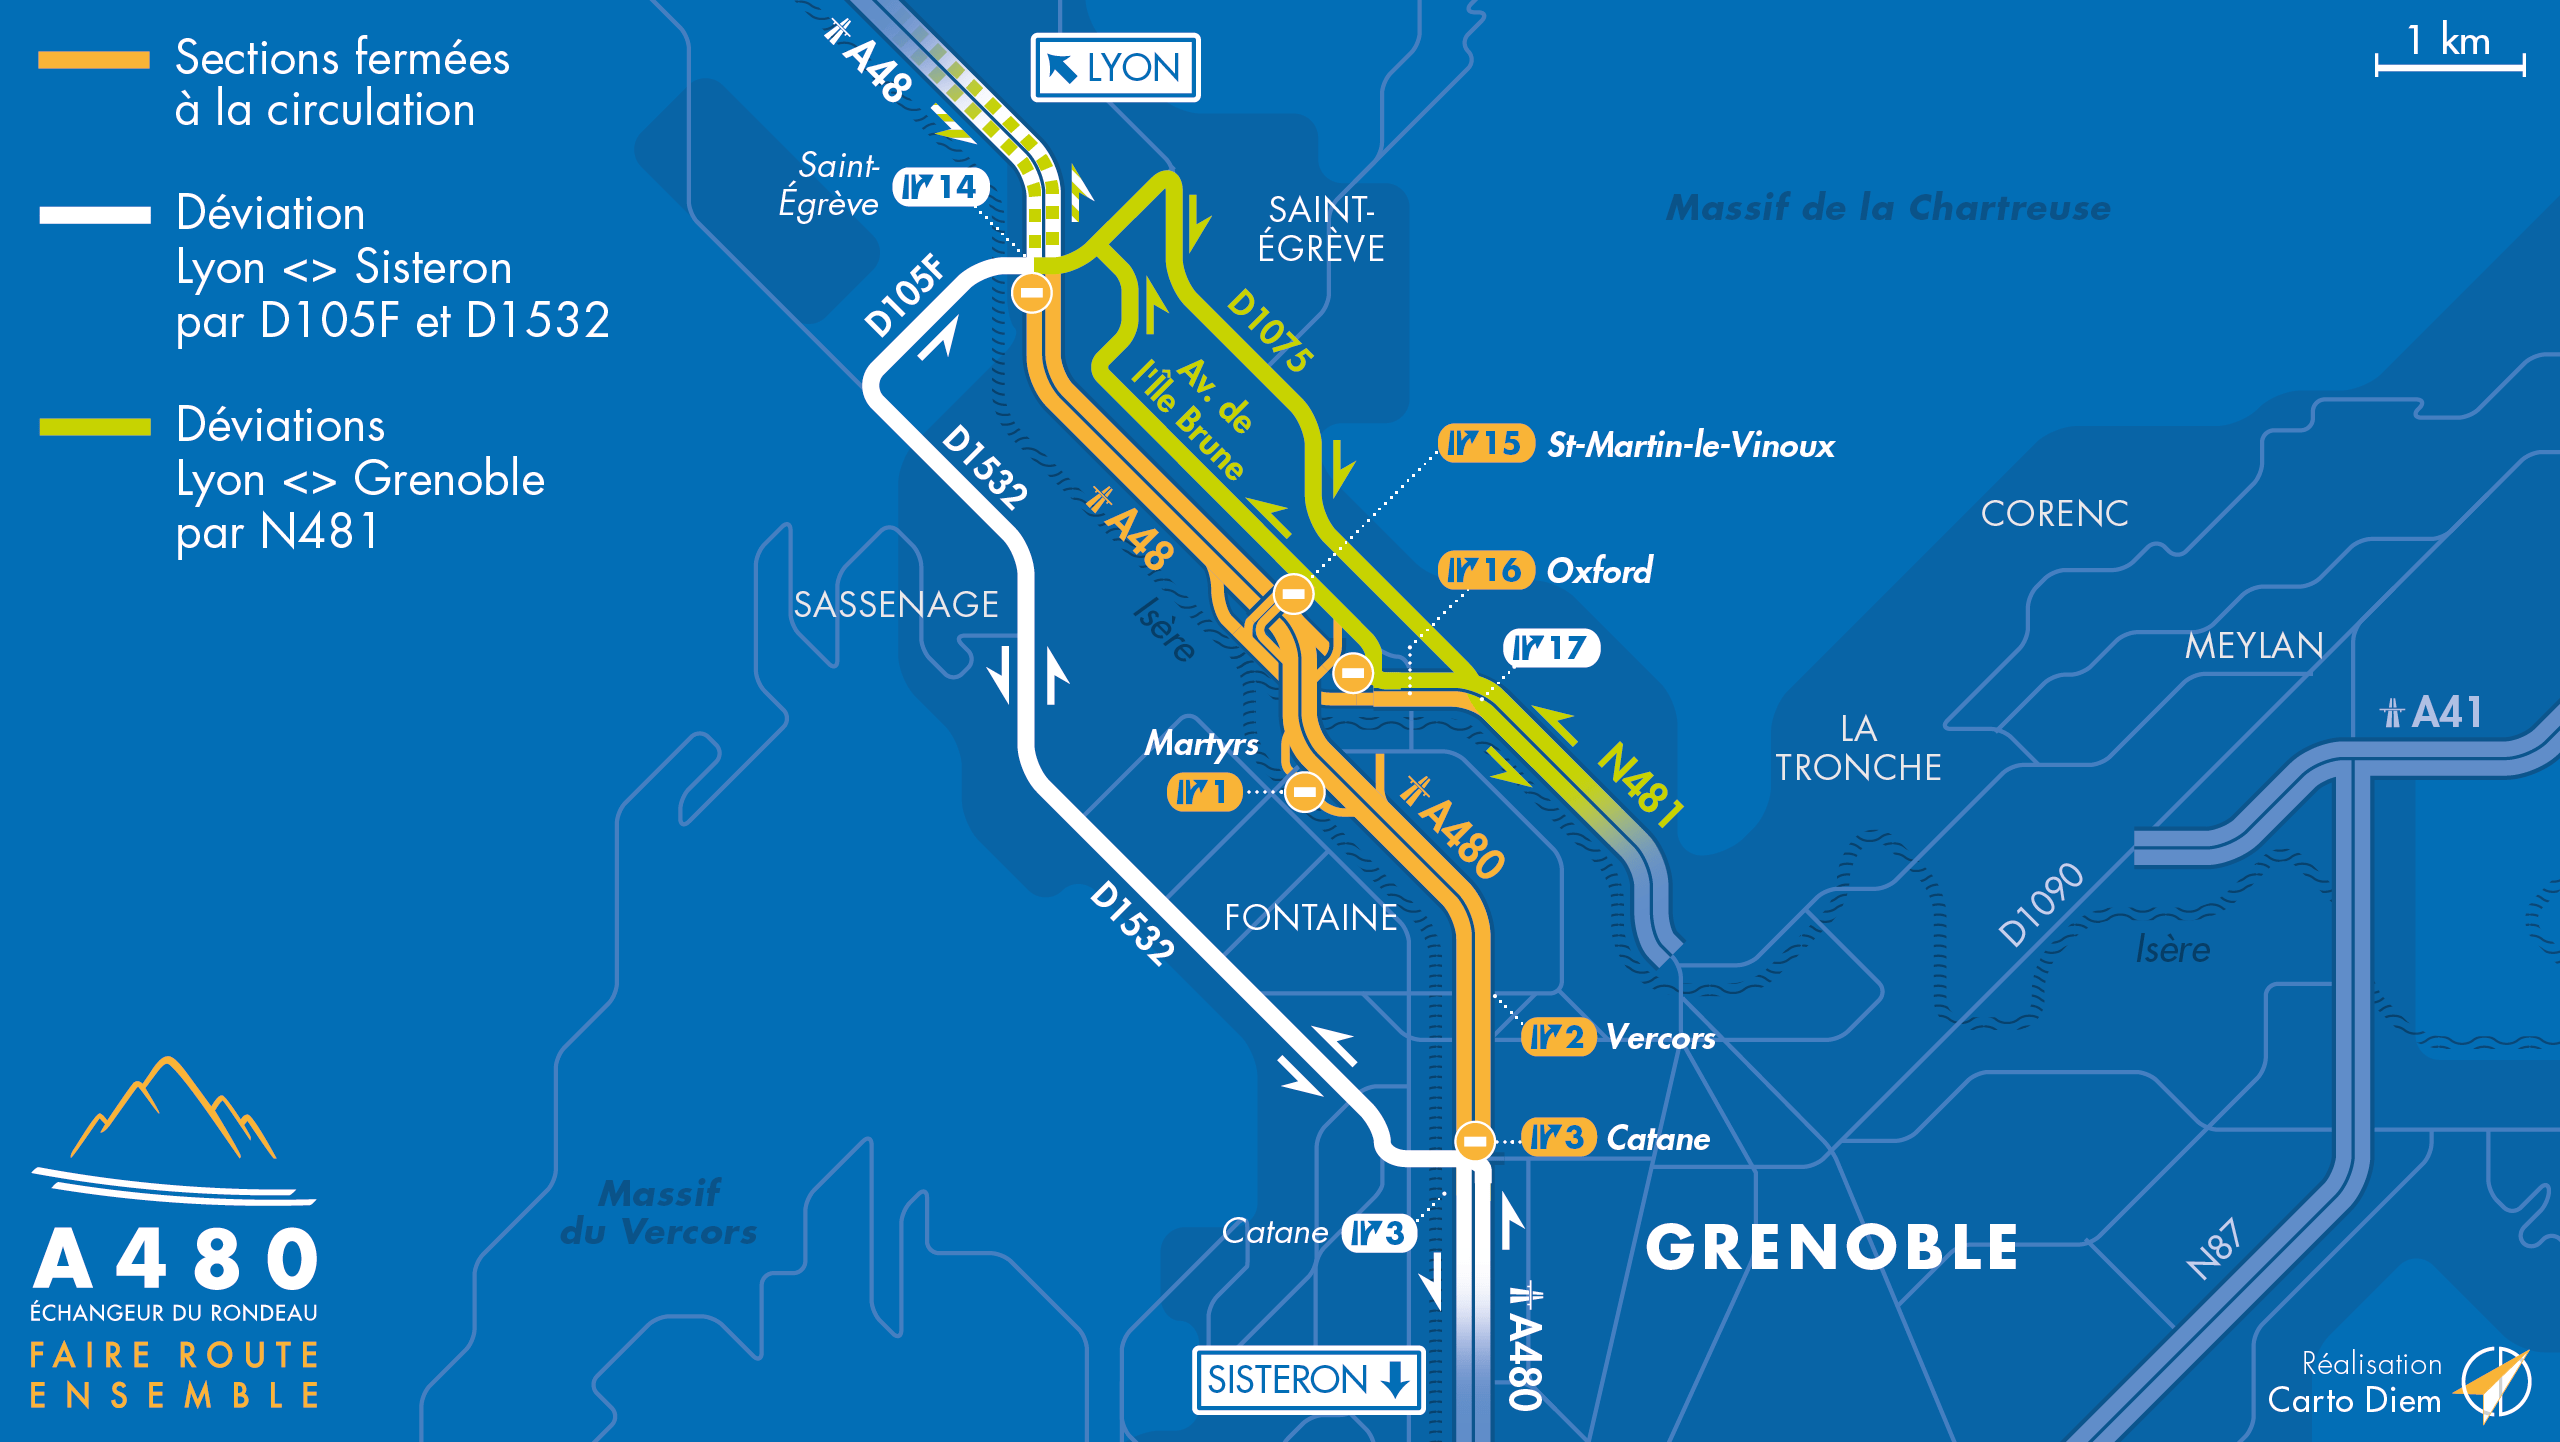 Carte de déviation suite à la fermeture pour travaux de l'autoroute urbaine A480 entre Saint-Egrève et Catane